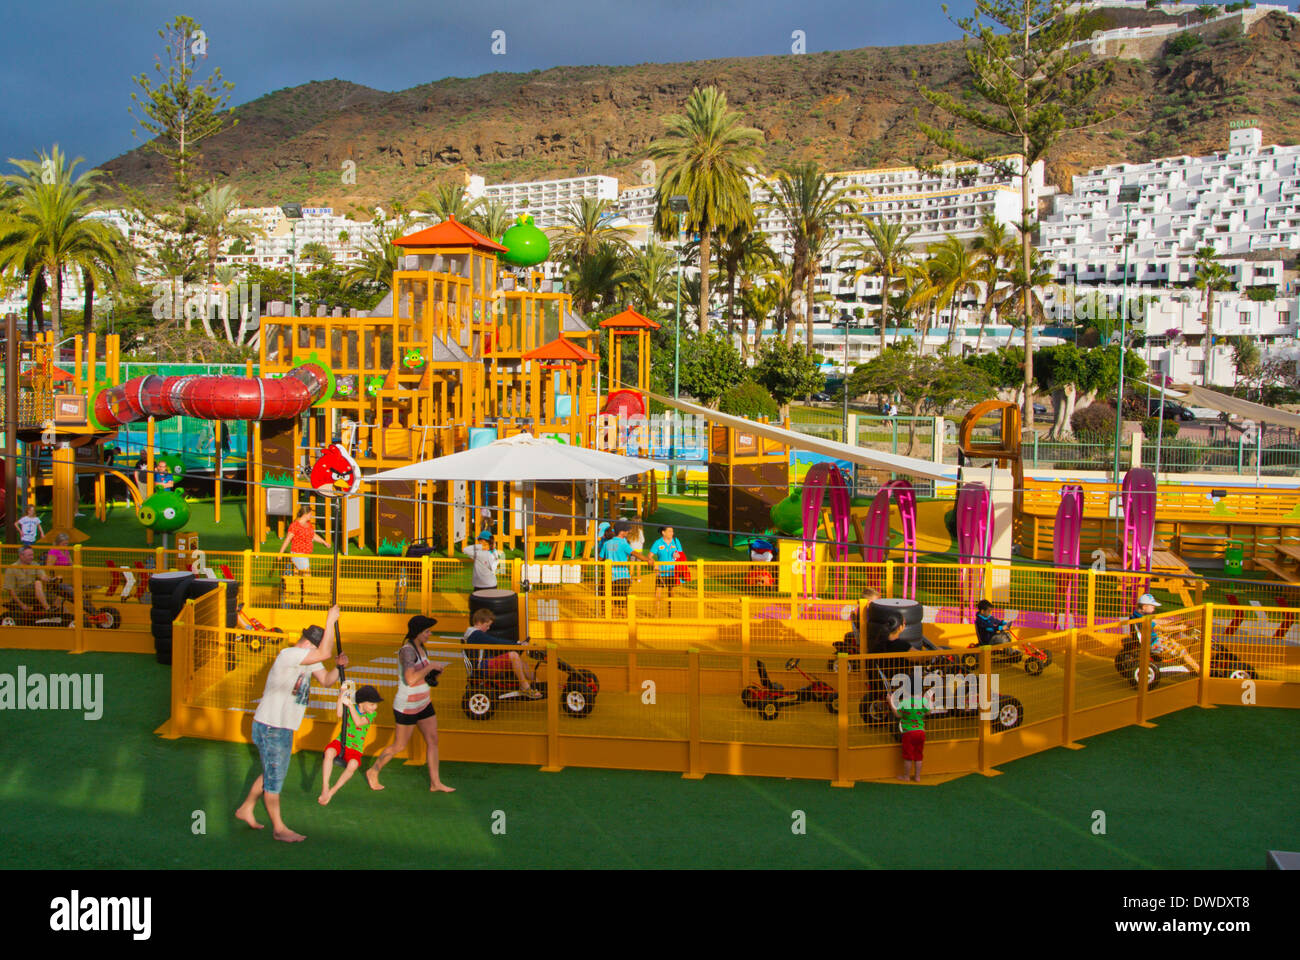 Angry Birds-Themenpark, Puerto Rico, Gran Canaria Insel, Kanaren, Spanien, Europa Stockfoto